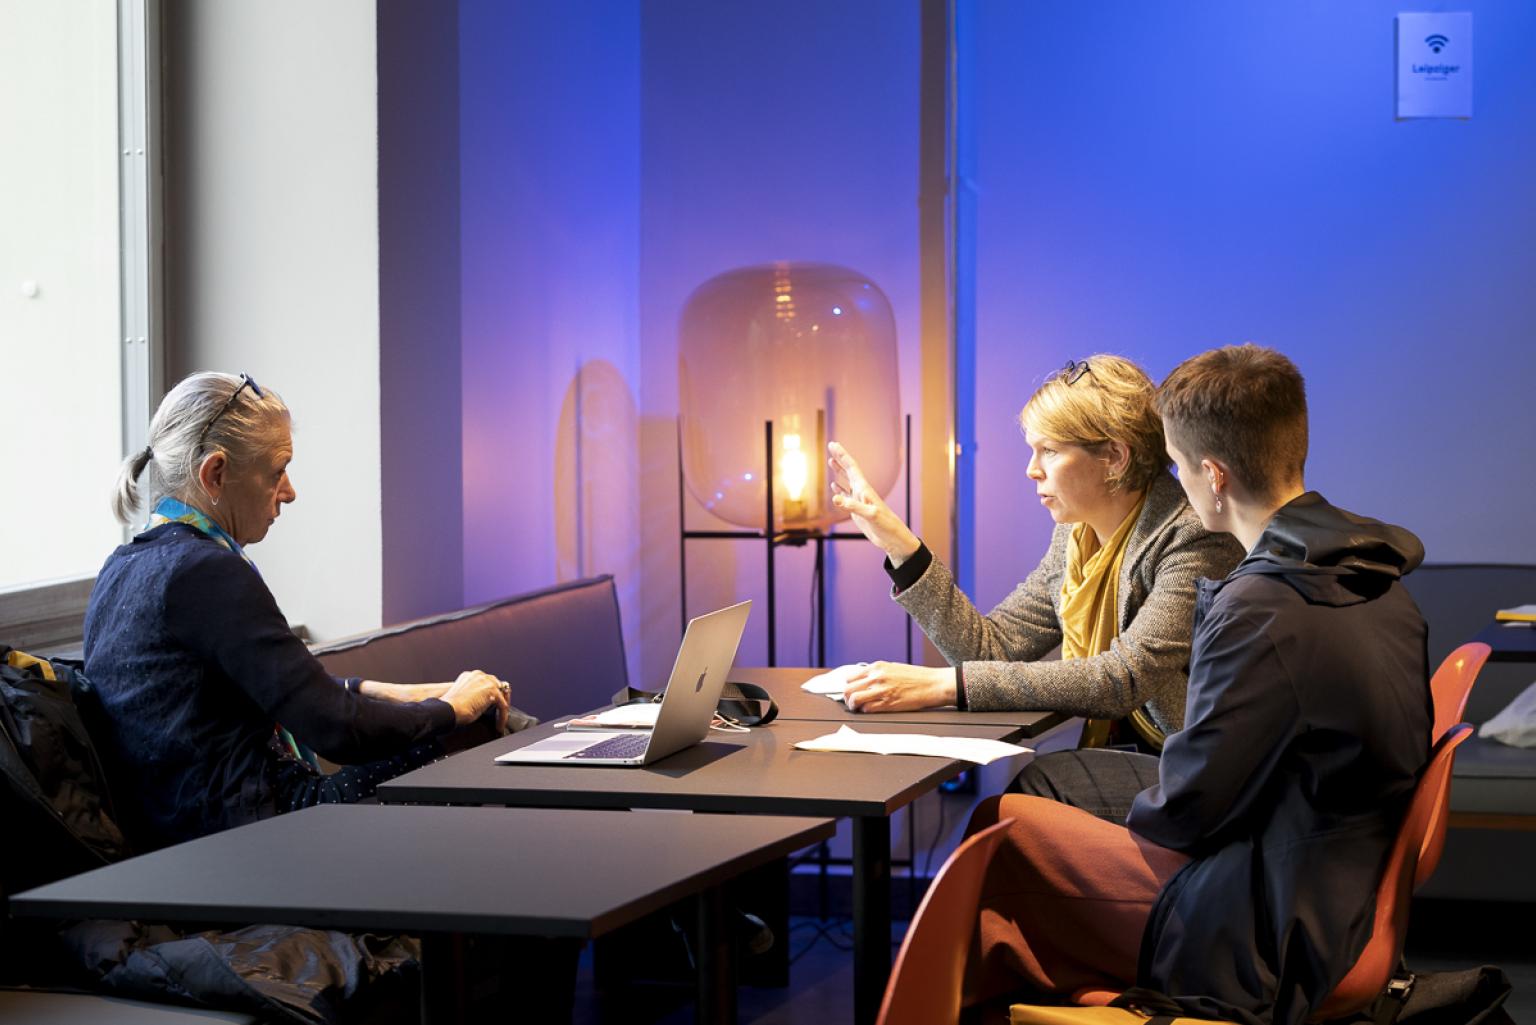 Drei Frauen sitzen in produktiver Atmosphäre zusammen an einem Tisch und unterhalten sich. Ein Laptop steht auf dem Tisch. Die Person in der Mitte gestikuliert, die beiden Personen links und rechts neben ihr schauen sie interessiert an.